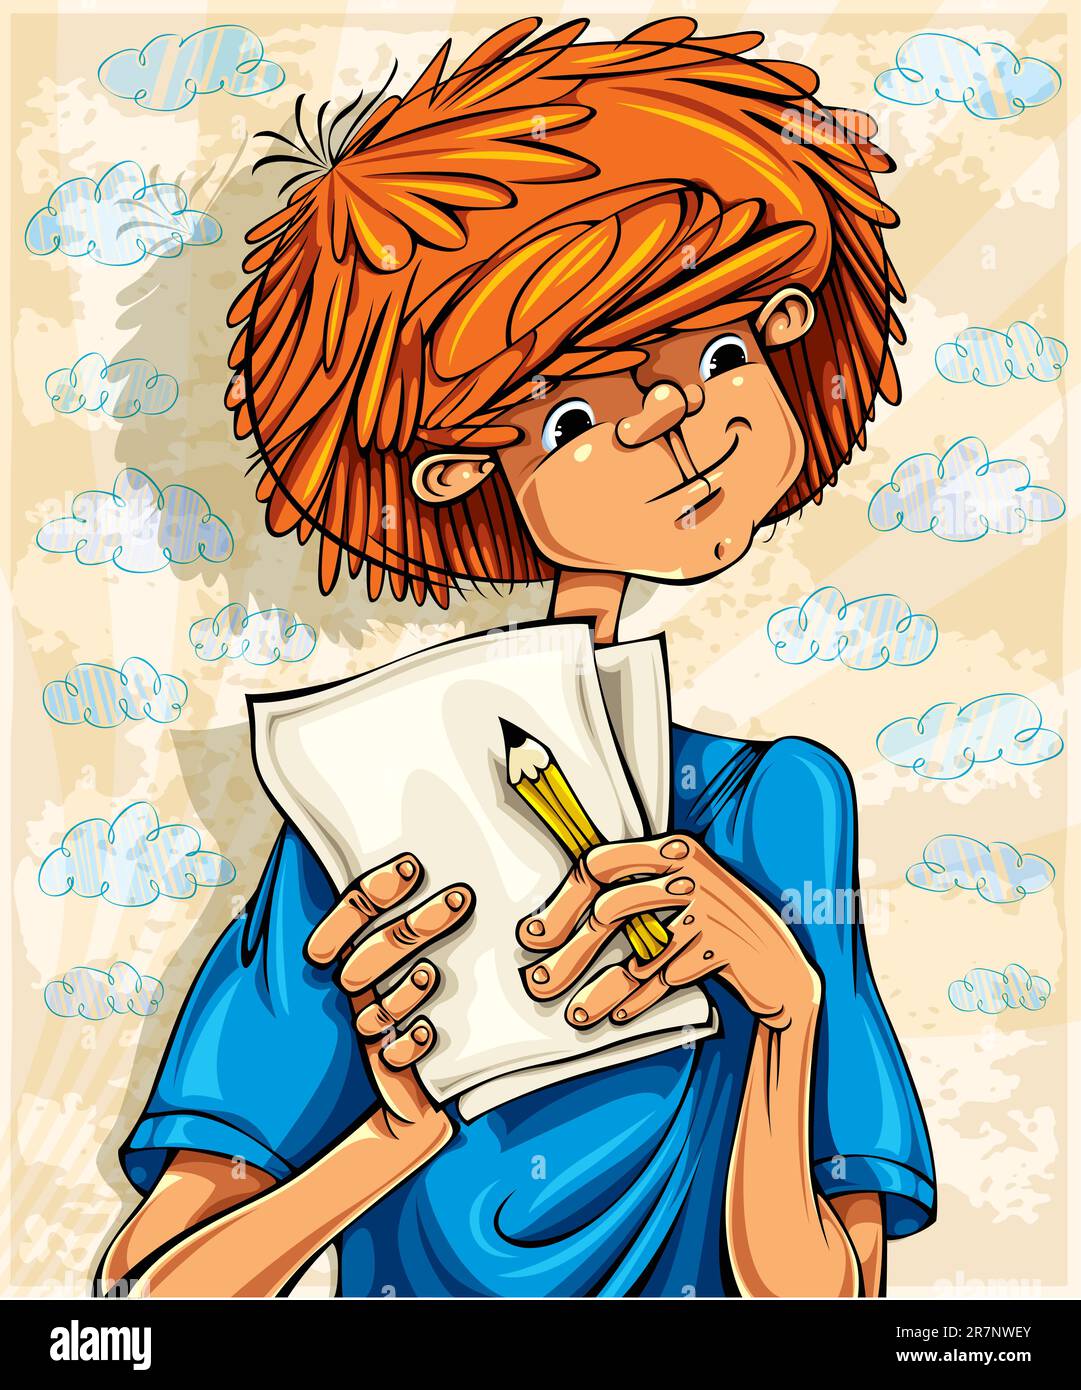 Teenager-Junge, haariger roter Kopf, mit Bleistift und Papiertüchern, junger Künstler. Vektordarstellung. Stock Vektor